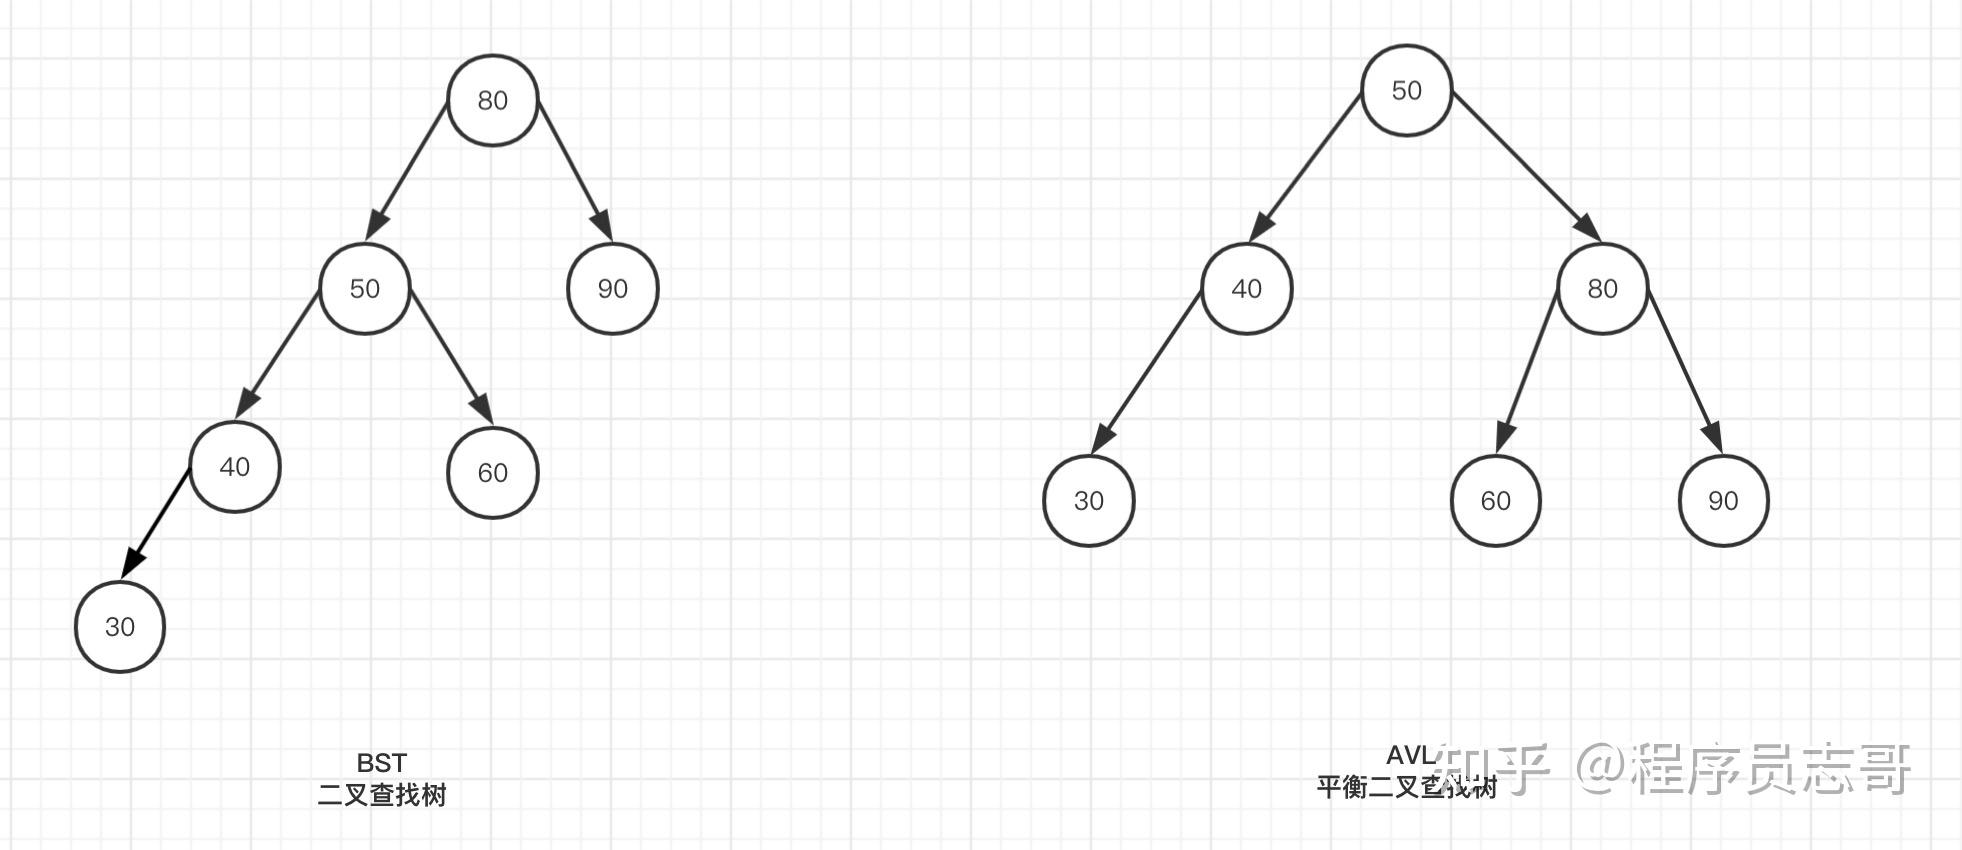 分析二叉排序树查找性能的最好情况和最坏情况_二叉排序树什么情况下查找效率最低